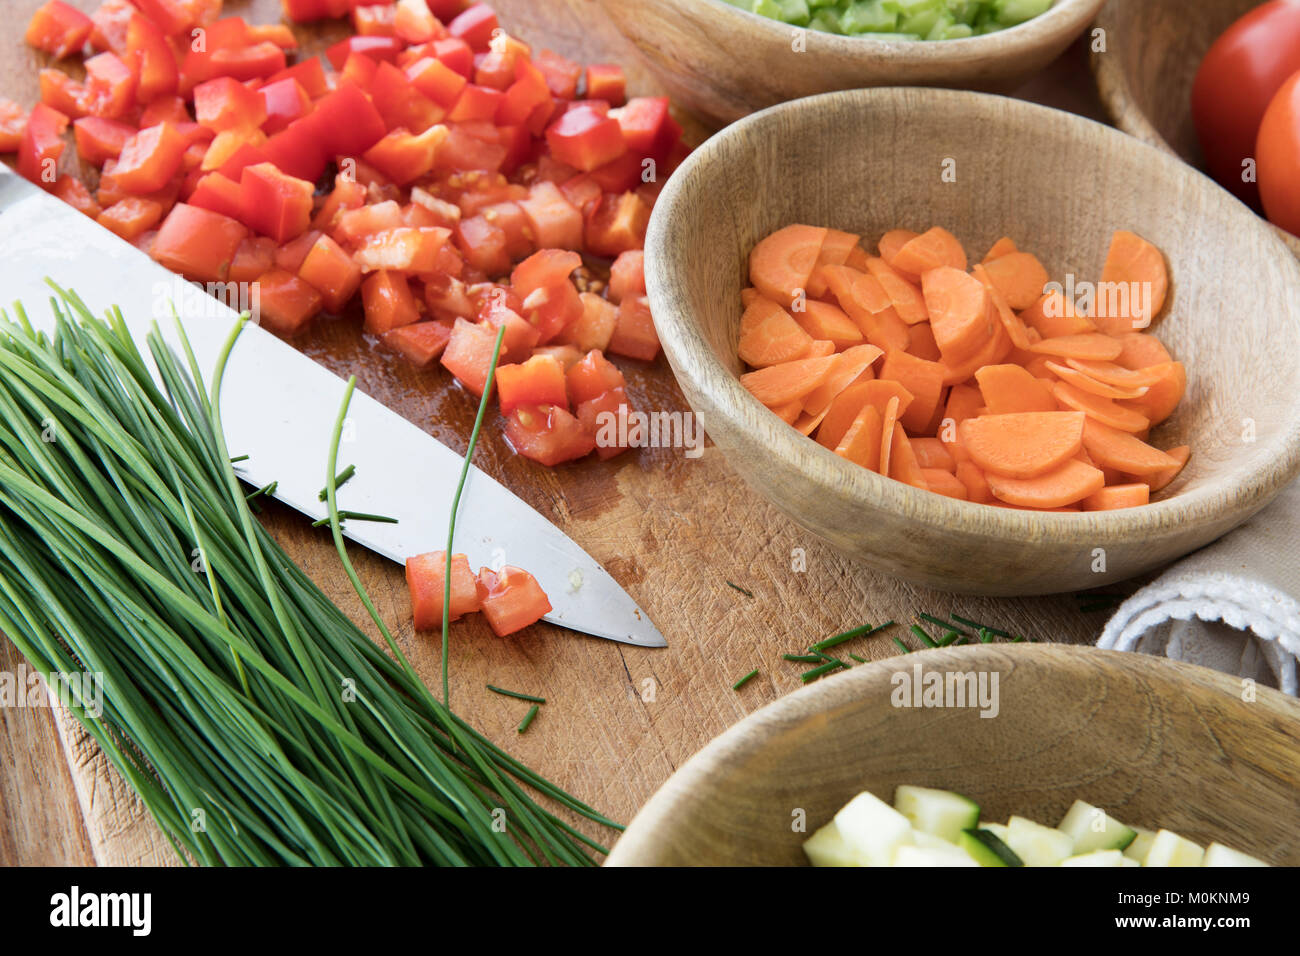 Gehackte Tomaten, Karotten, und Schnittlauch auf Schneidebrett mit Messer durch andere Inhaltsstoffe umgeben. Stockfoto